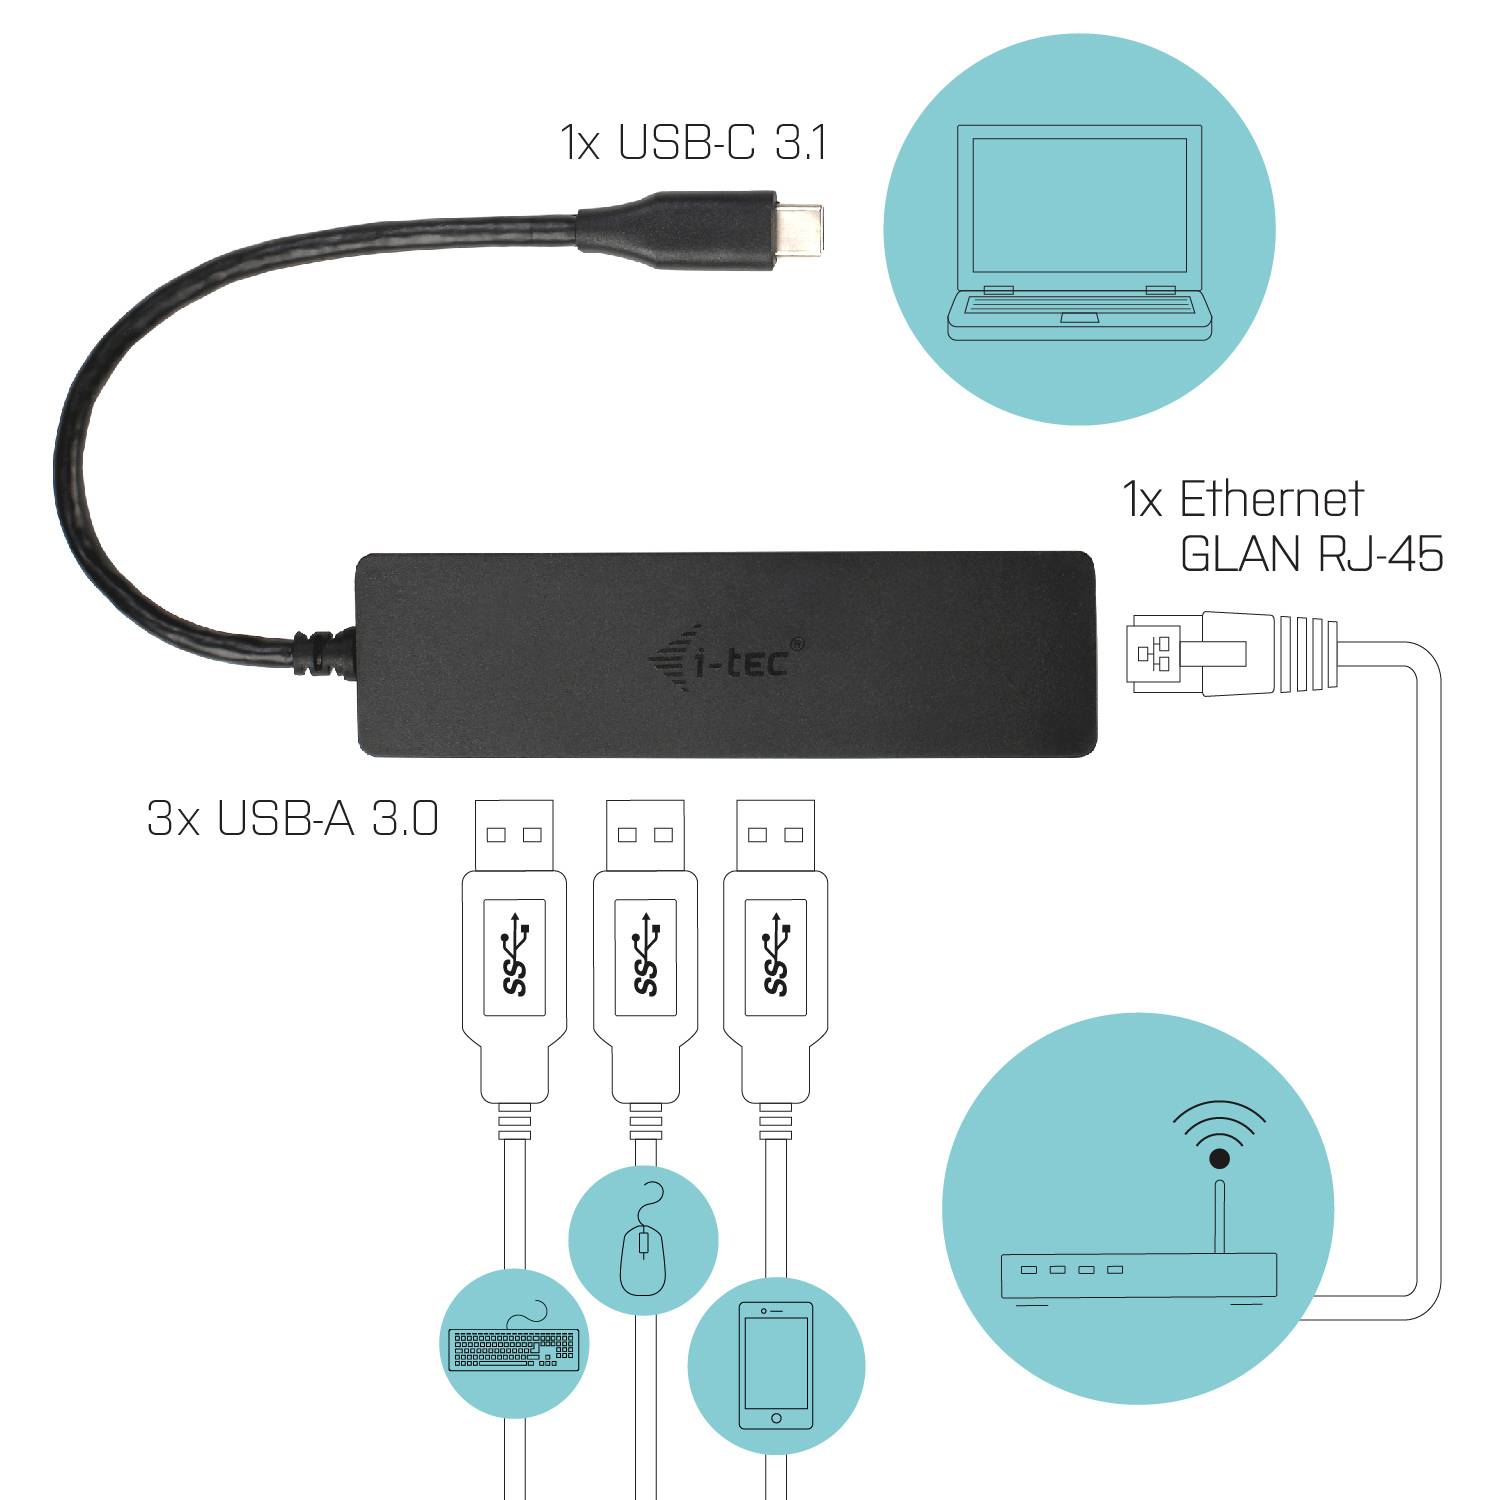 Rca Informatique - image du produit : I-TEC USB-C SLIM HUB + GLAN USB-C 3 PORT HUB USB 3.0 + GLAN